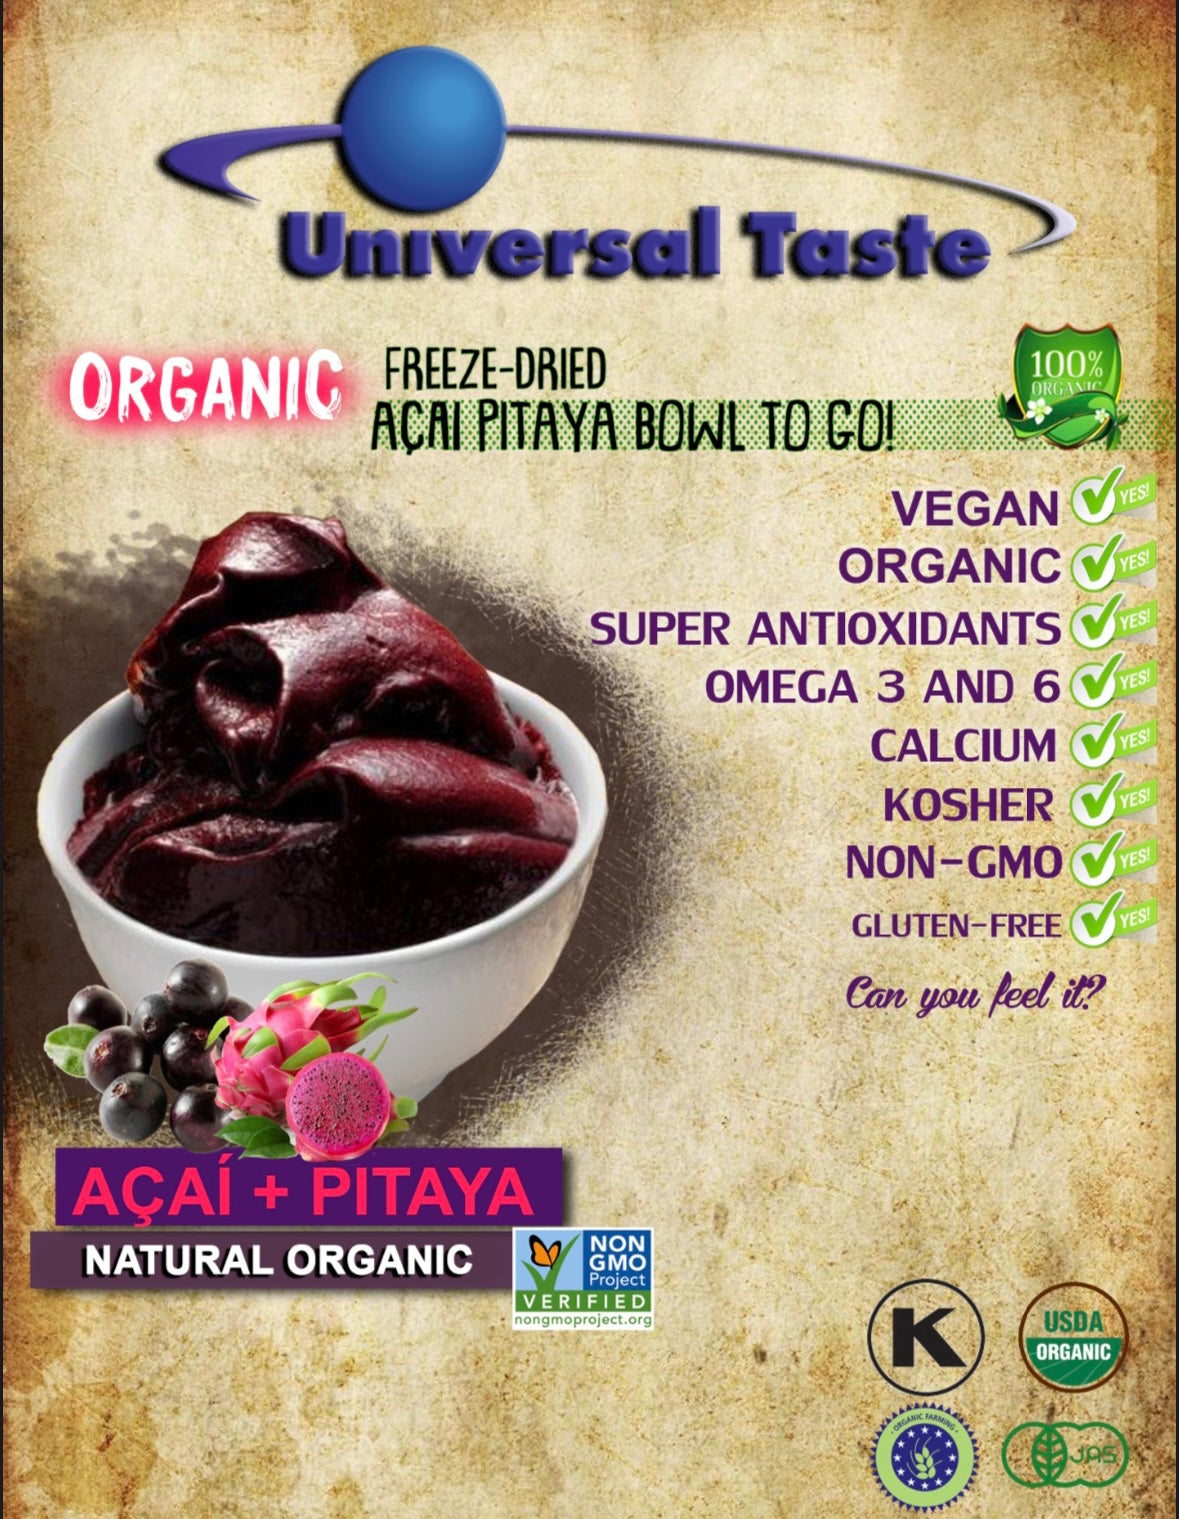 Açaí Pitaya Freeze Dried Powder - Universal Taste